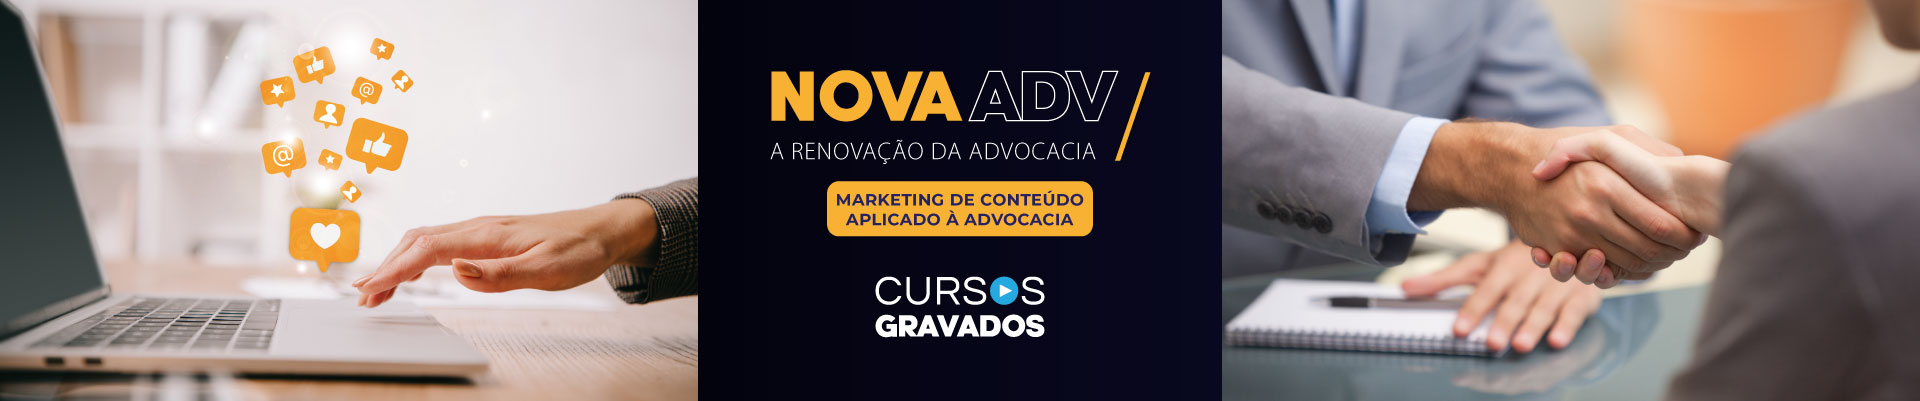 NovaAdv - Marketing de conteúdo aplicado à advocacia - Módulo 1